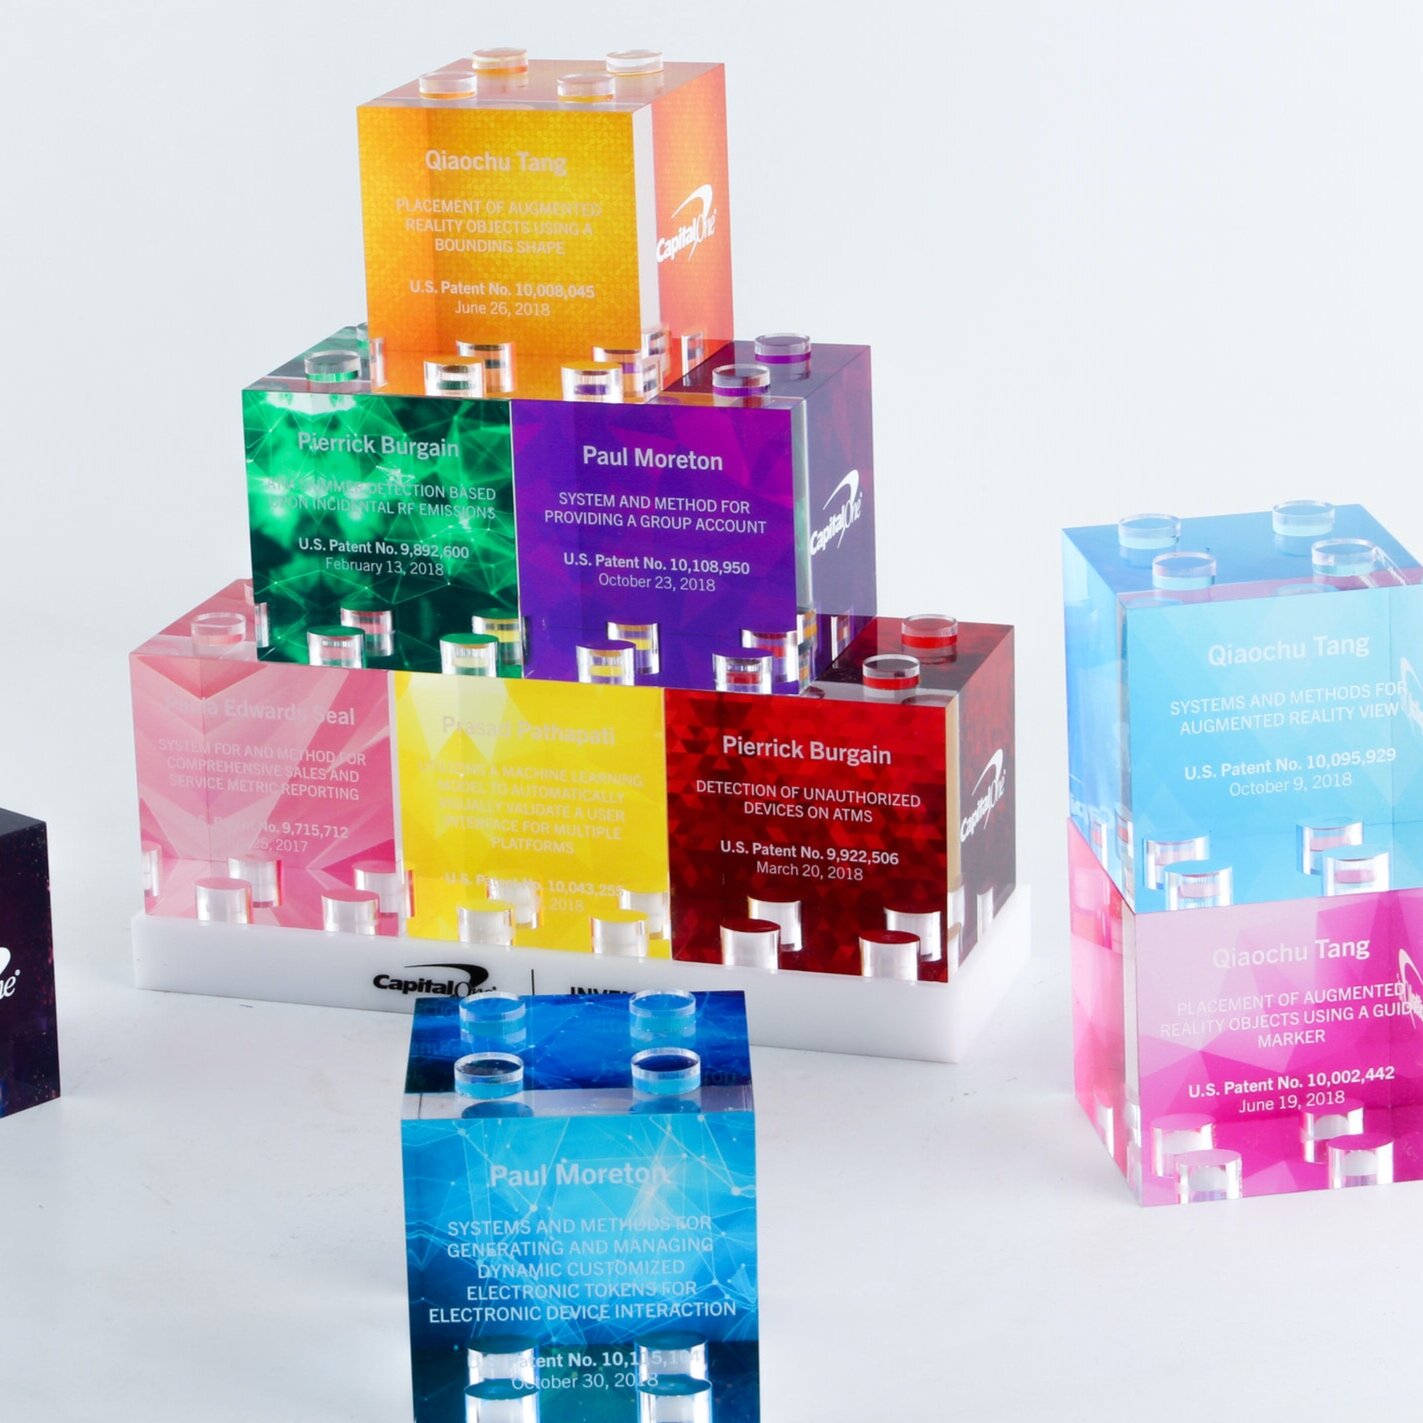 Capital One Rainbow stacking block awards lego style 2